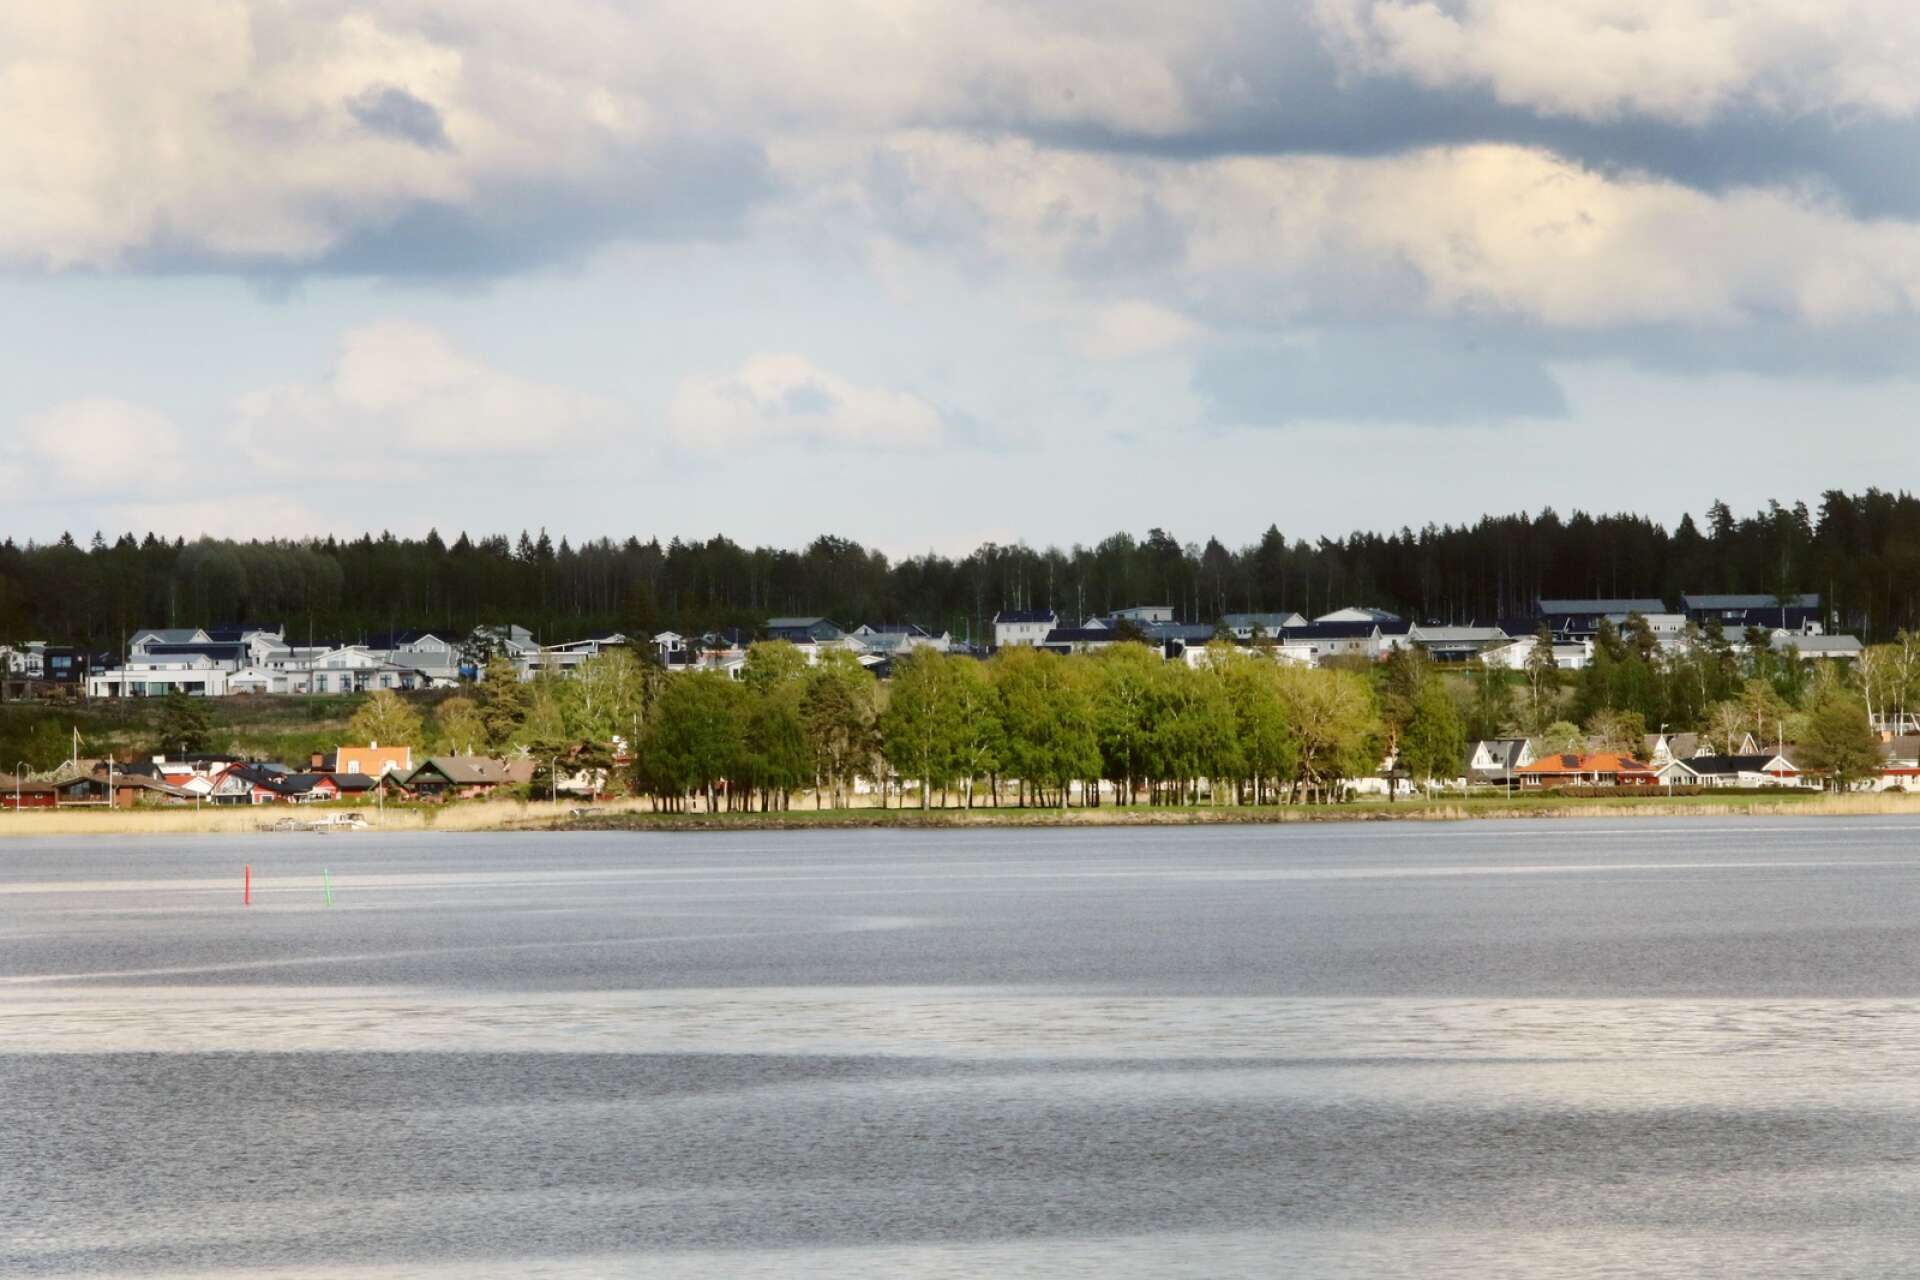 När nya områden ska planläggas som berörs av strandskyddsreglerna krävs omfattande utredningar. I Mariestad gäller utökat strandskydd som sträcker sig 300 meter från Vänerkanten.